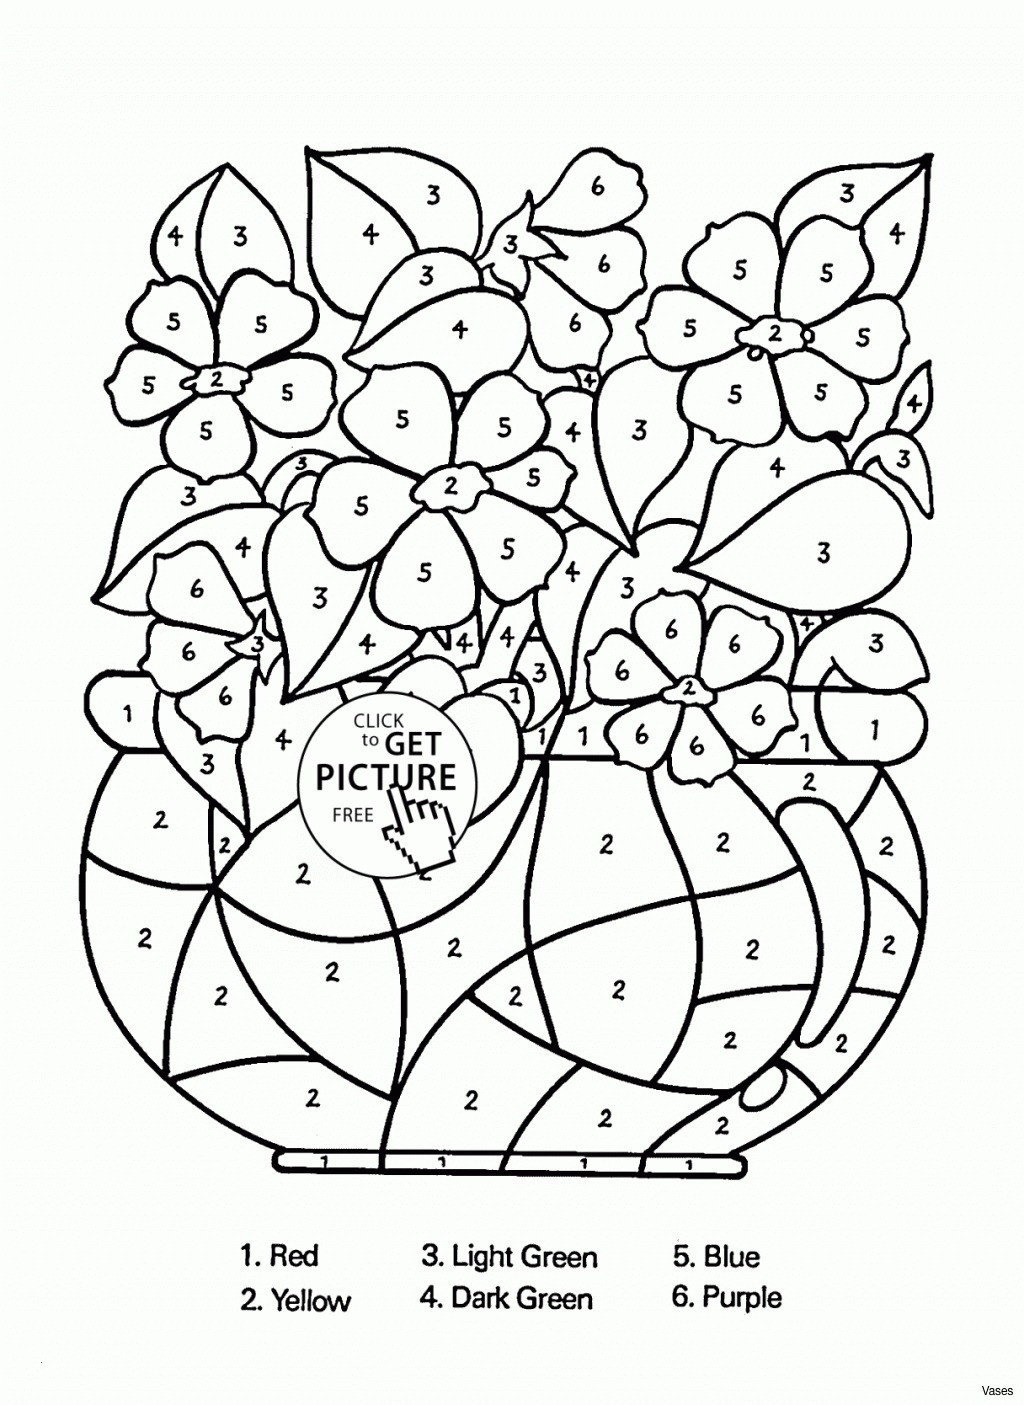 17 Lovely 4 Square Vase 2024 free download 4 square vase of 20 beautiful square black vases bogekompresorturkiye com regarding coloring flowers fresh coloring worksheets for kindergarten free lovely cool vases flower